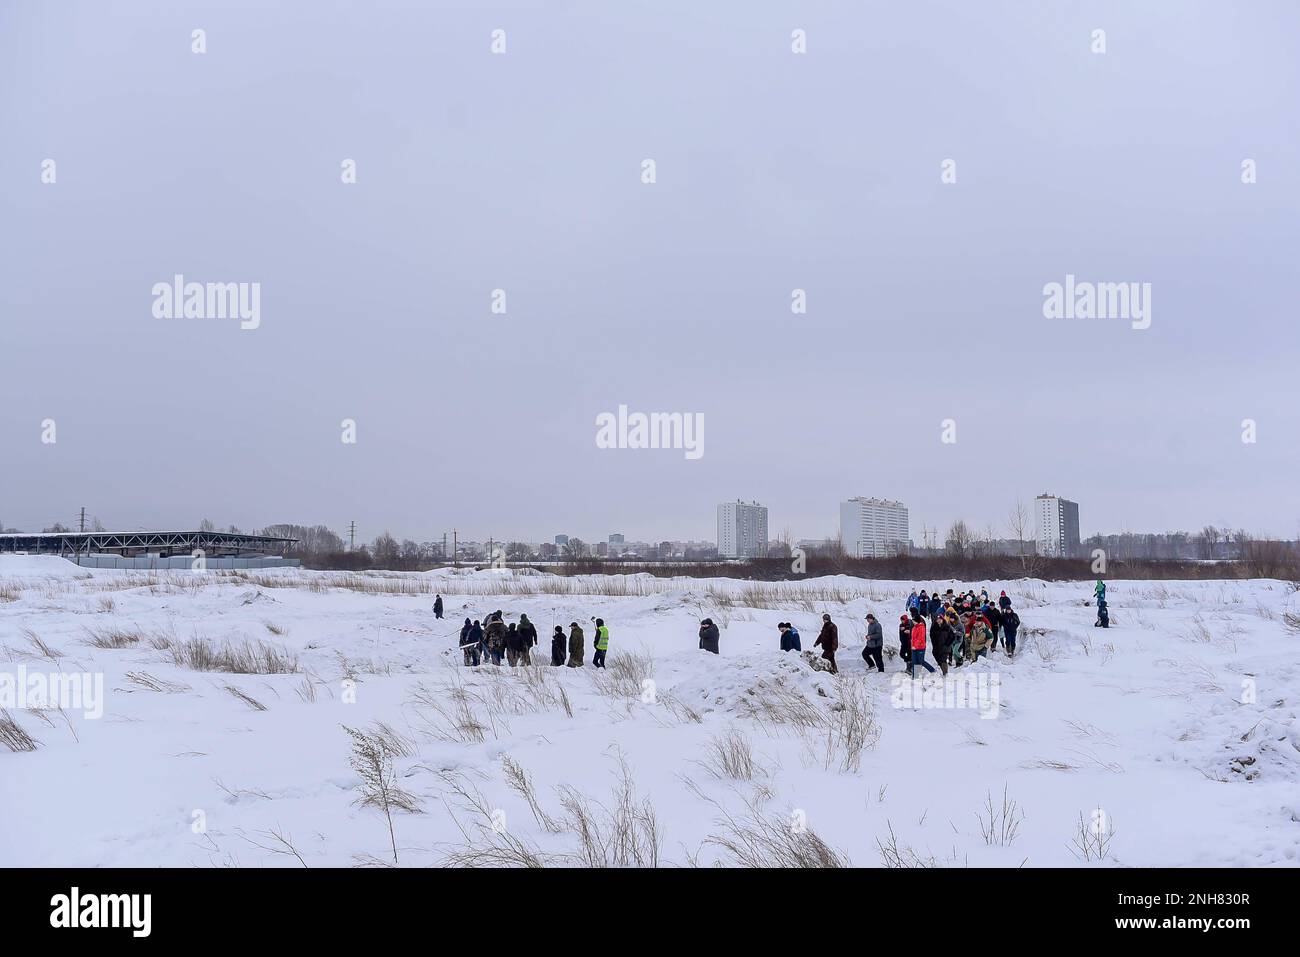 Une foule de personnes se promène dans un champ enneigé pour vérifier la piste lors d'une compétition tout-terrain en Russie en Sibérie. Banque D'Images